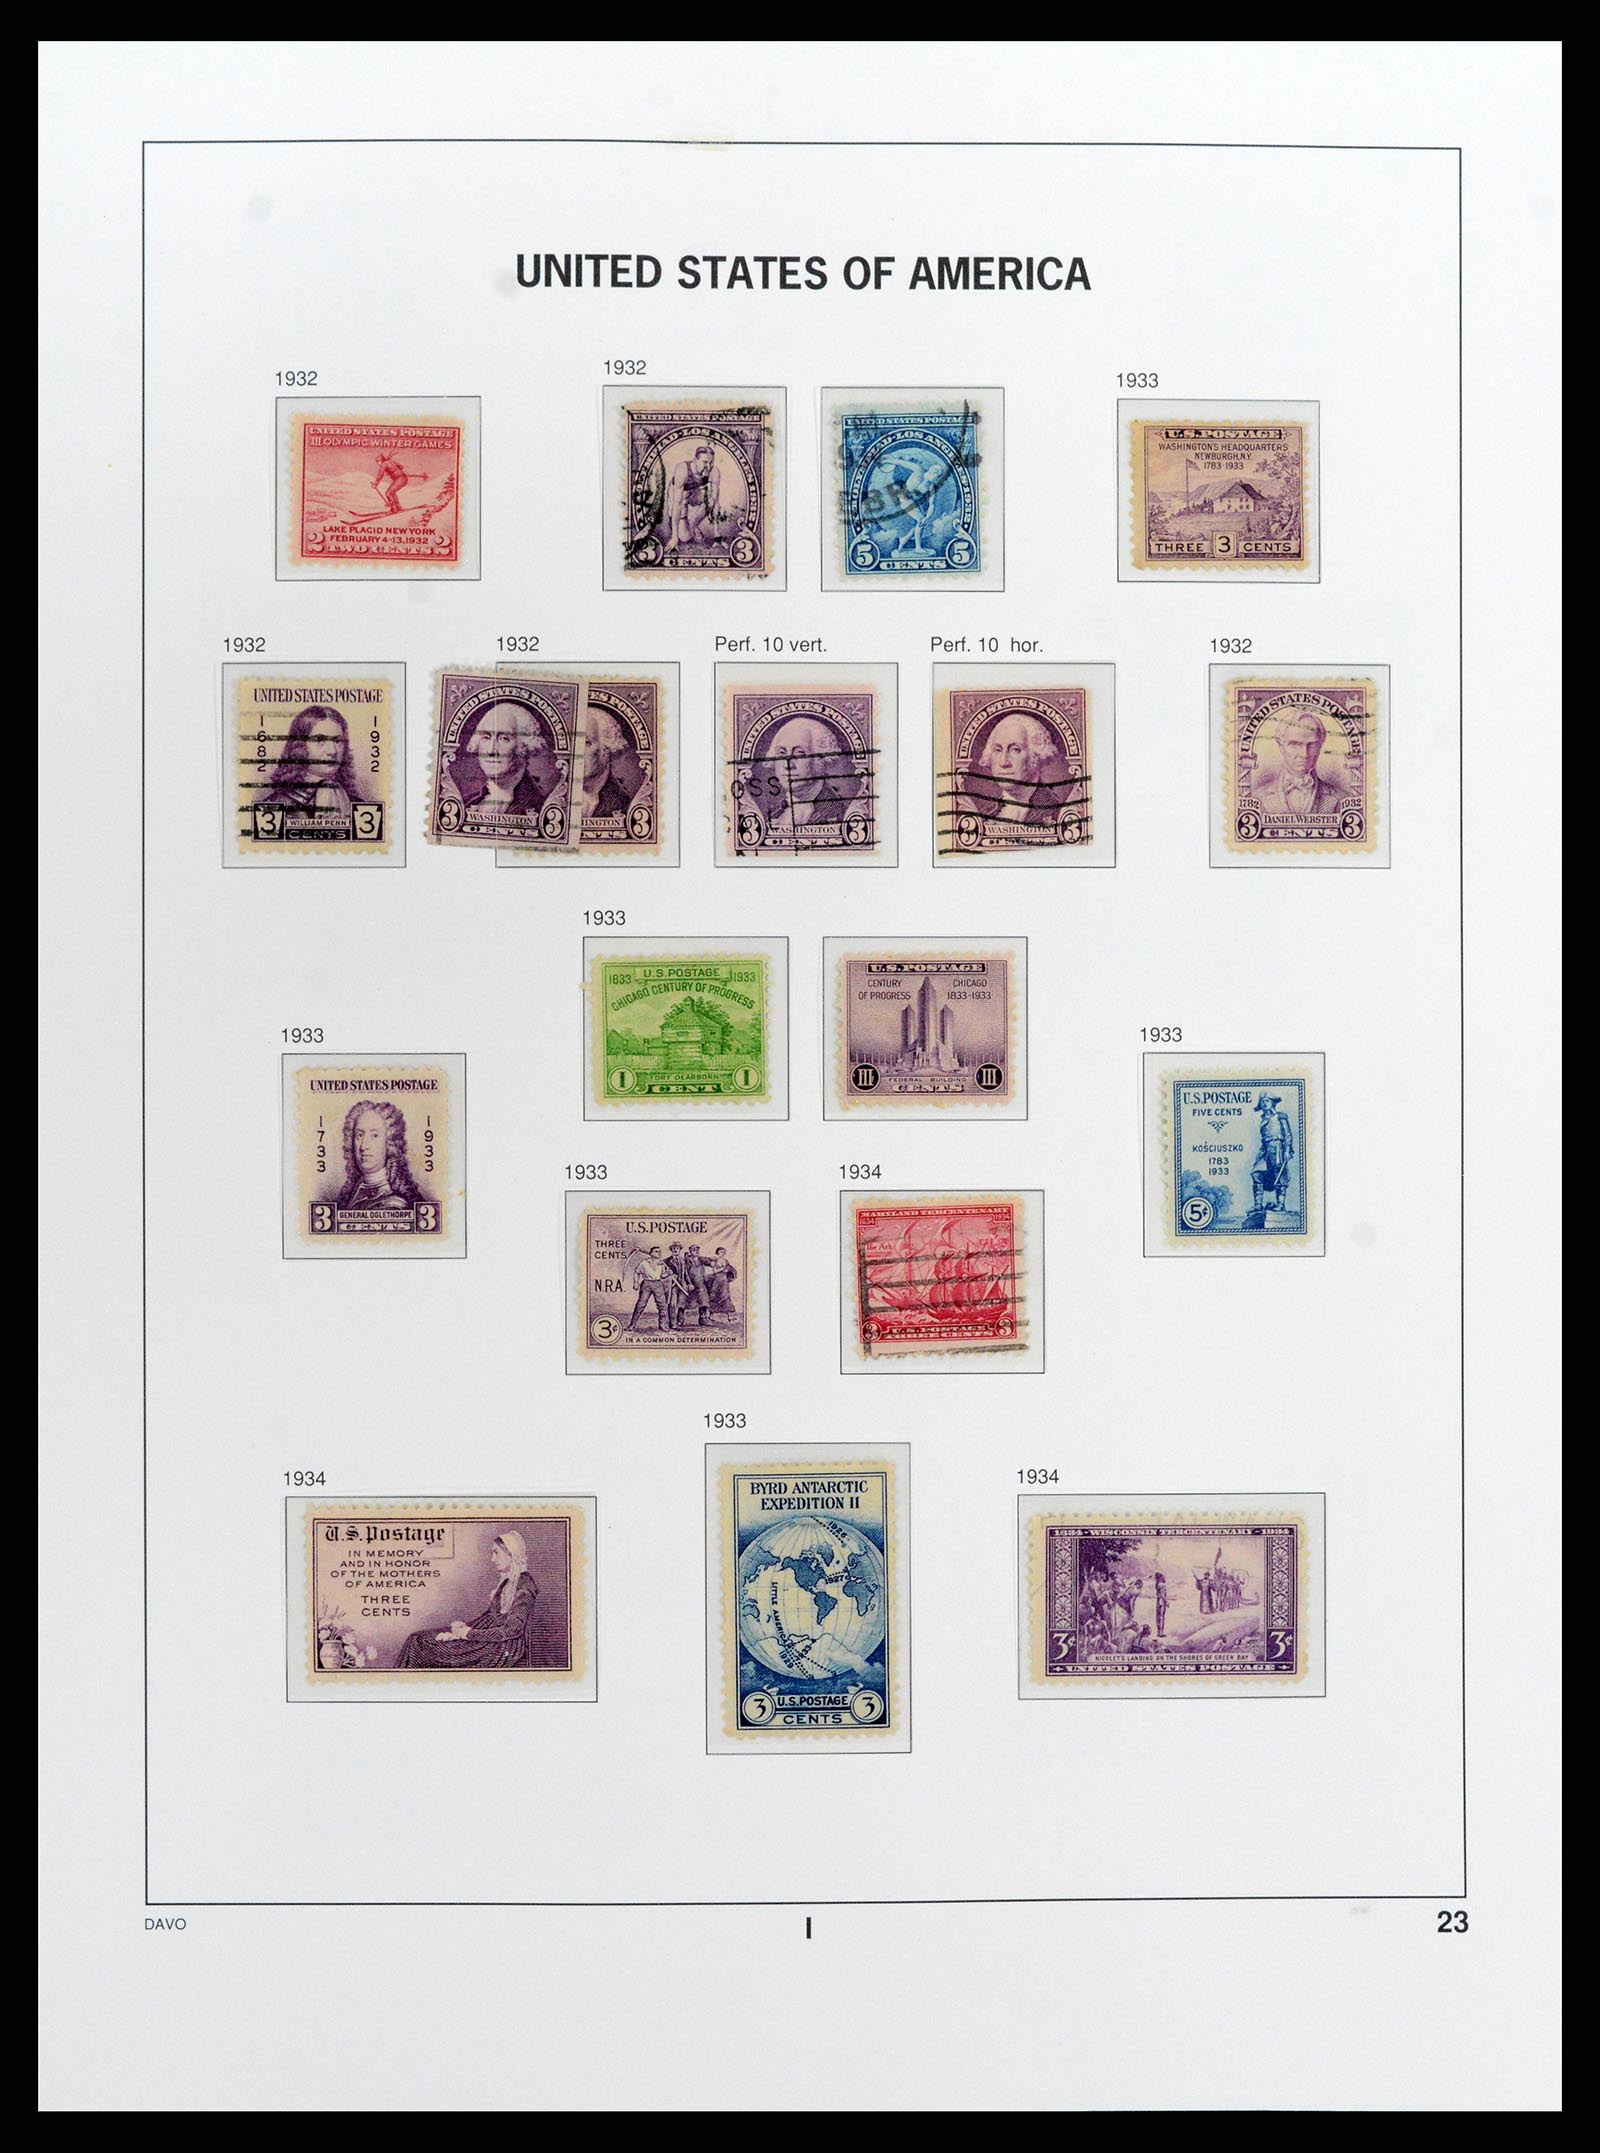 37810 035 - Stamp Collection 37810 USA 1851-2000.